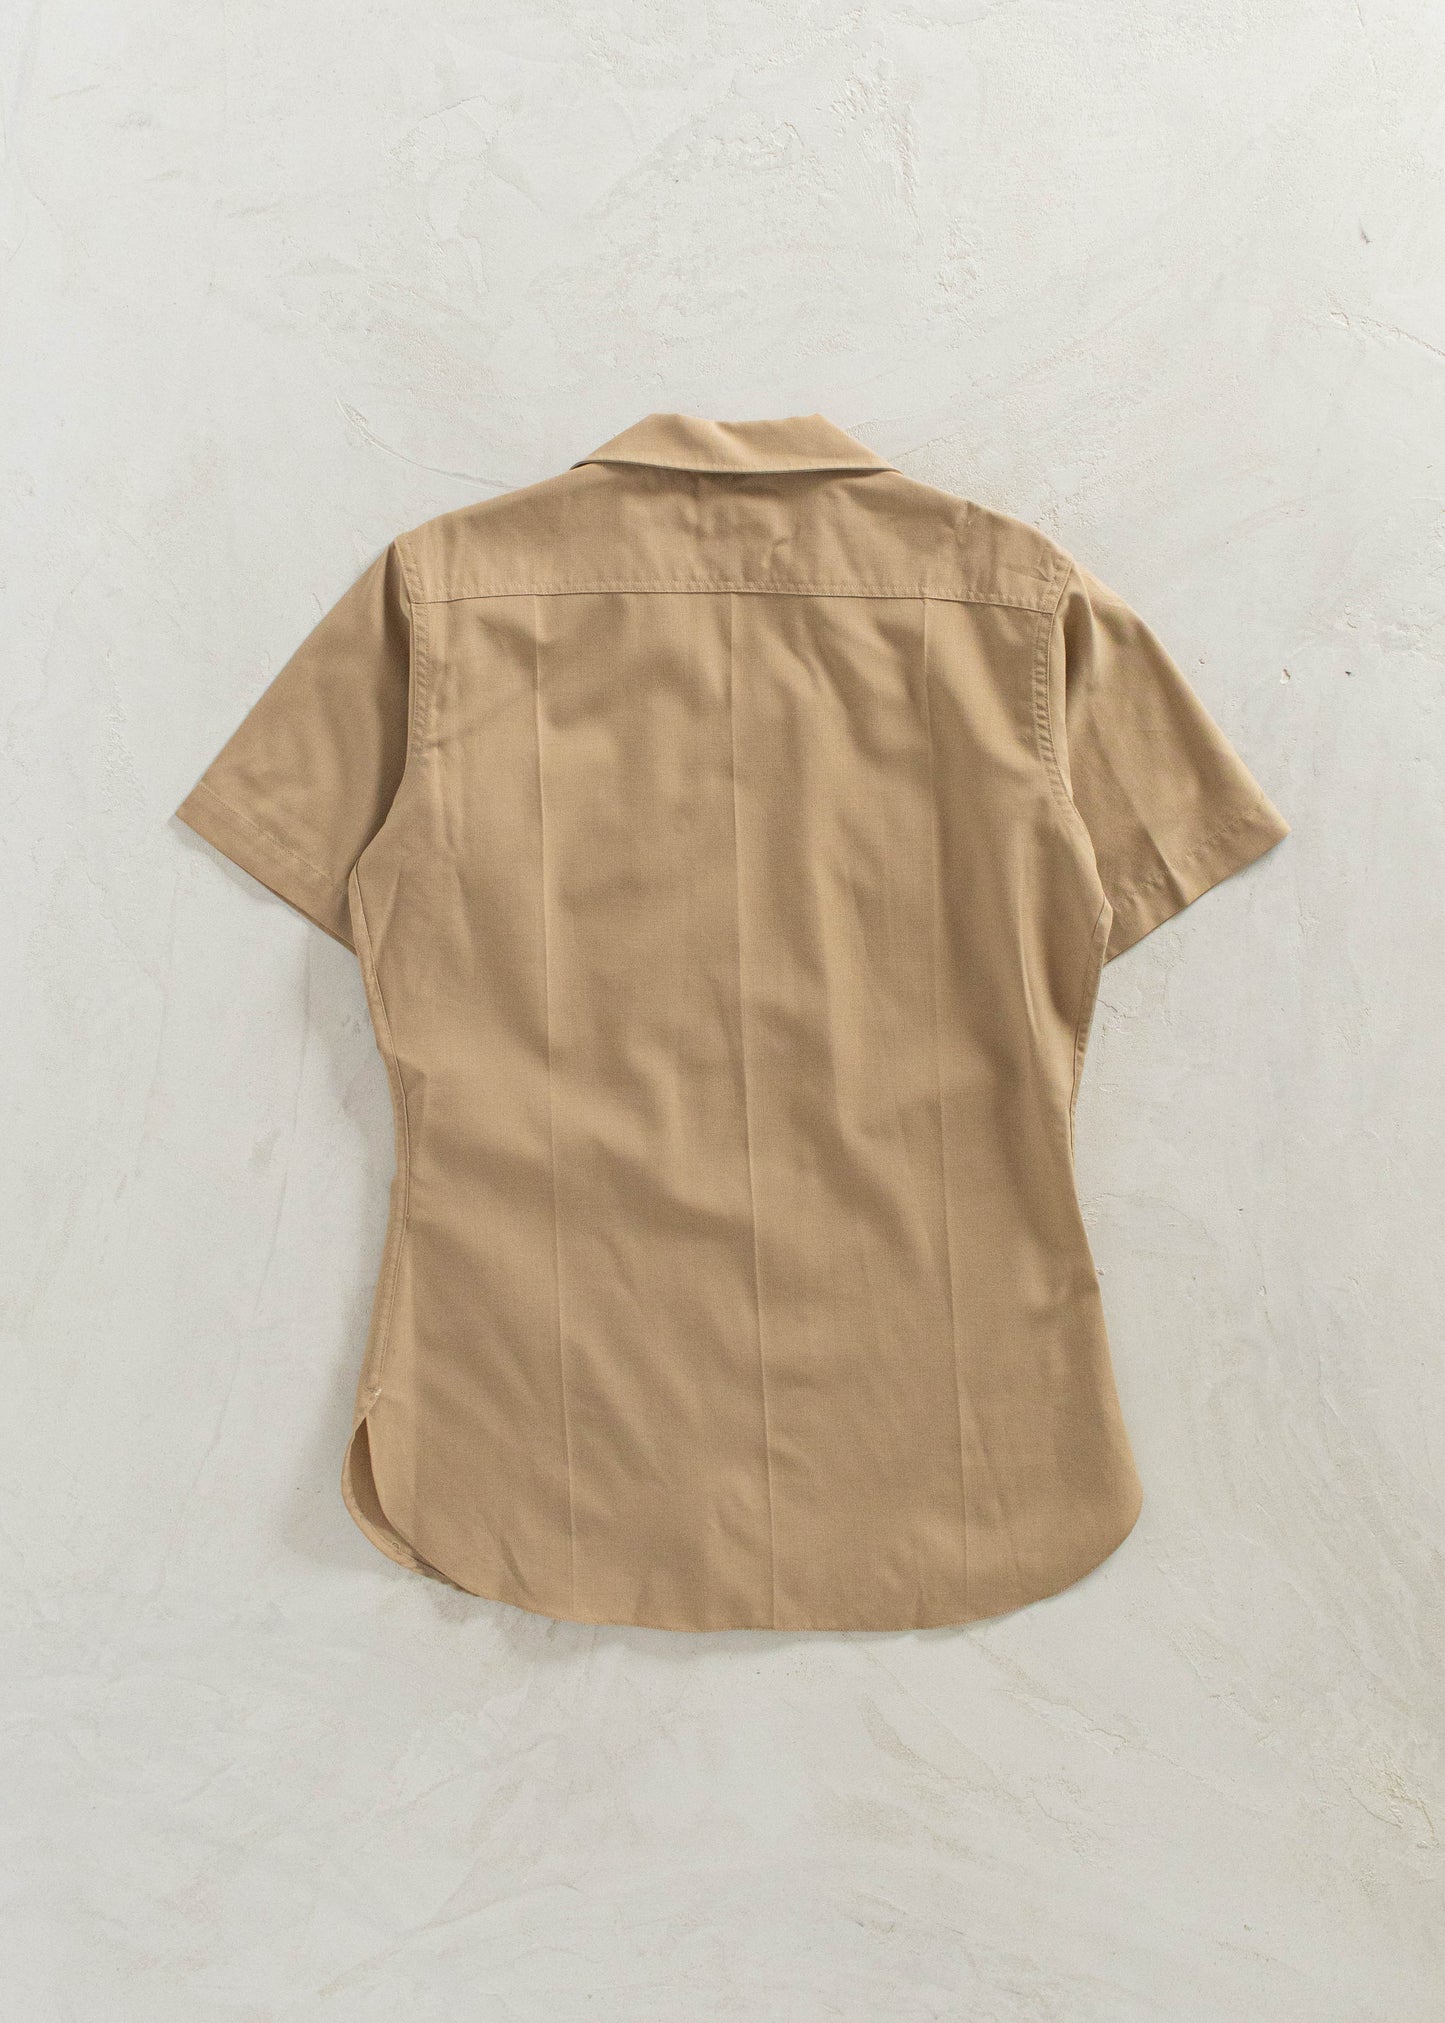 Vintage 1970s USMC Short Sleeve Button Up Uniform Shirt Size XS/S